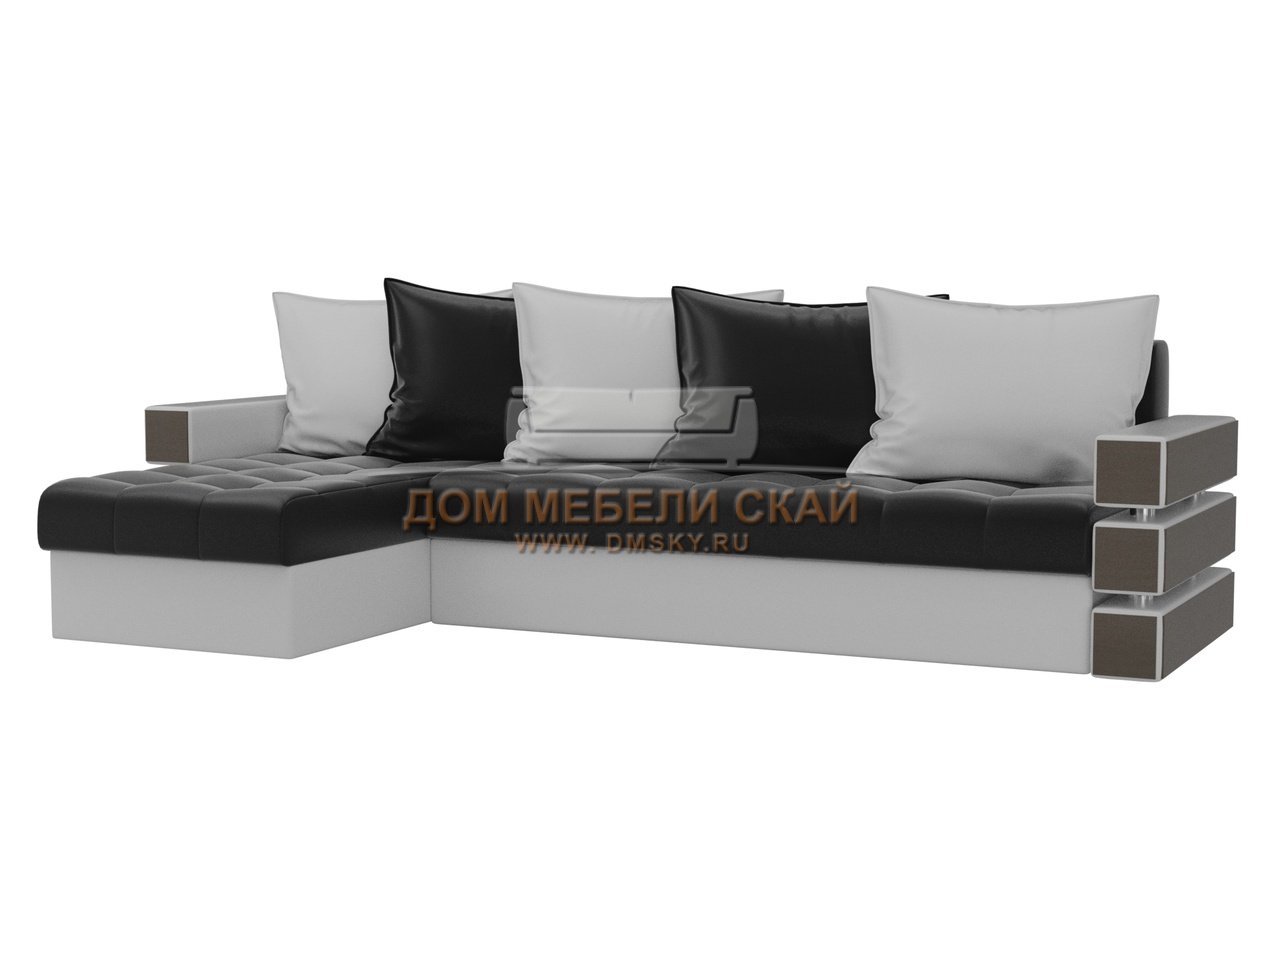 Угловой диван-кровать левый Венеция, черный/белый/экокожа - купить в Москвенедорого по цене 56 990 руб. (арт. B10025989)